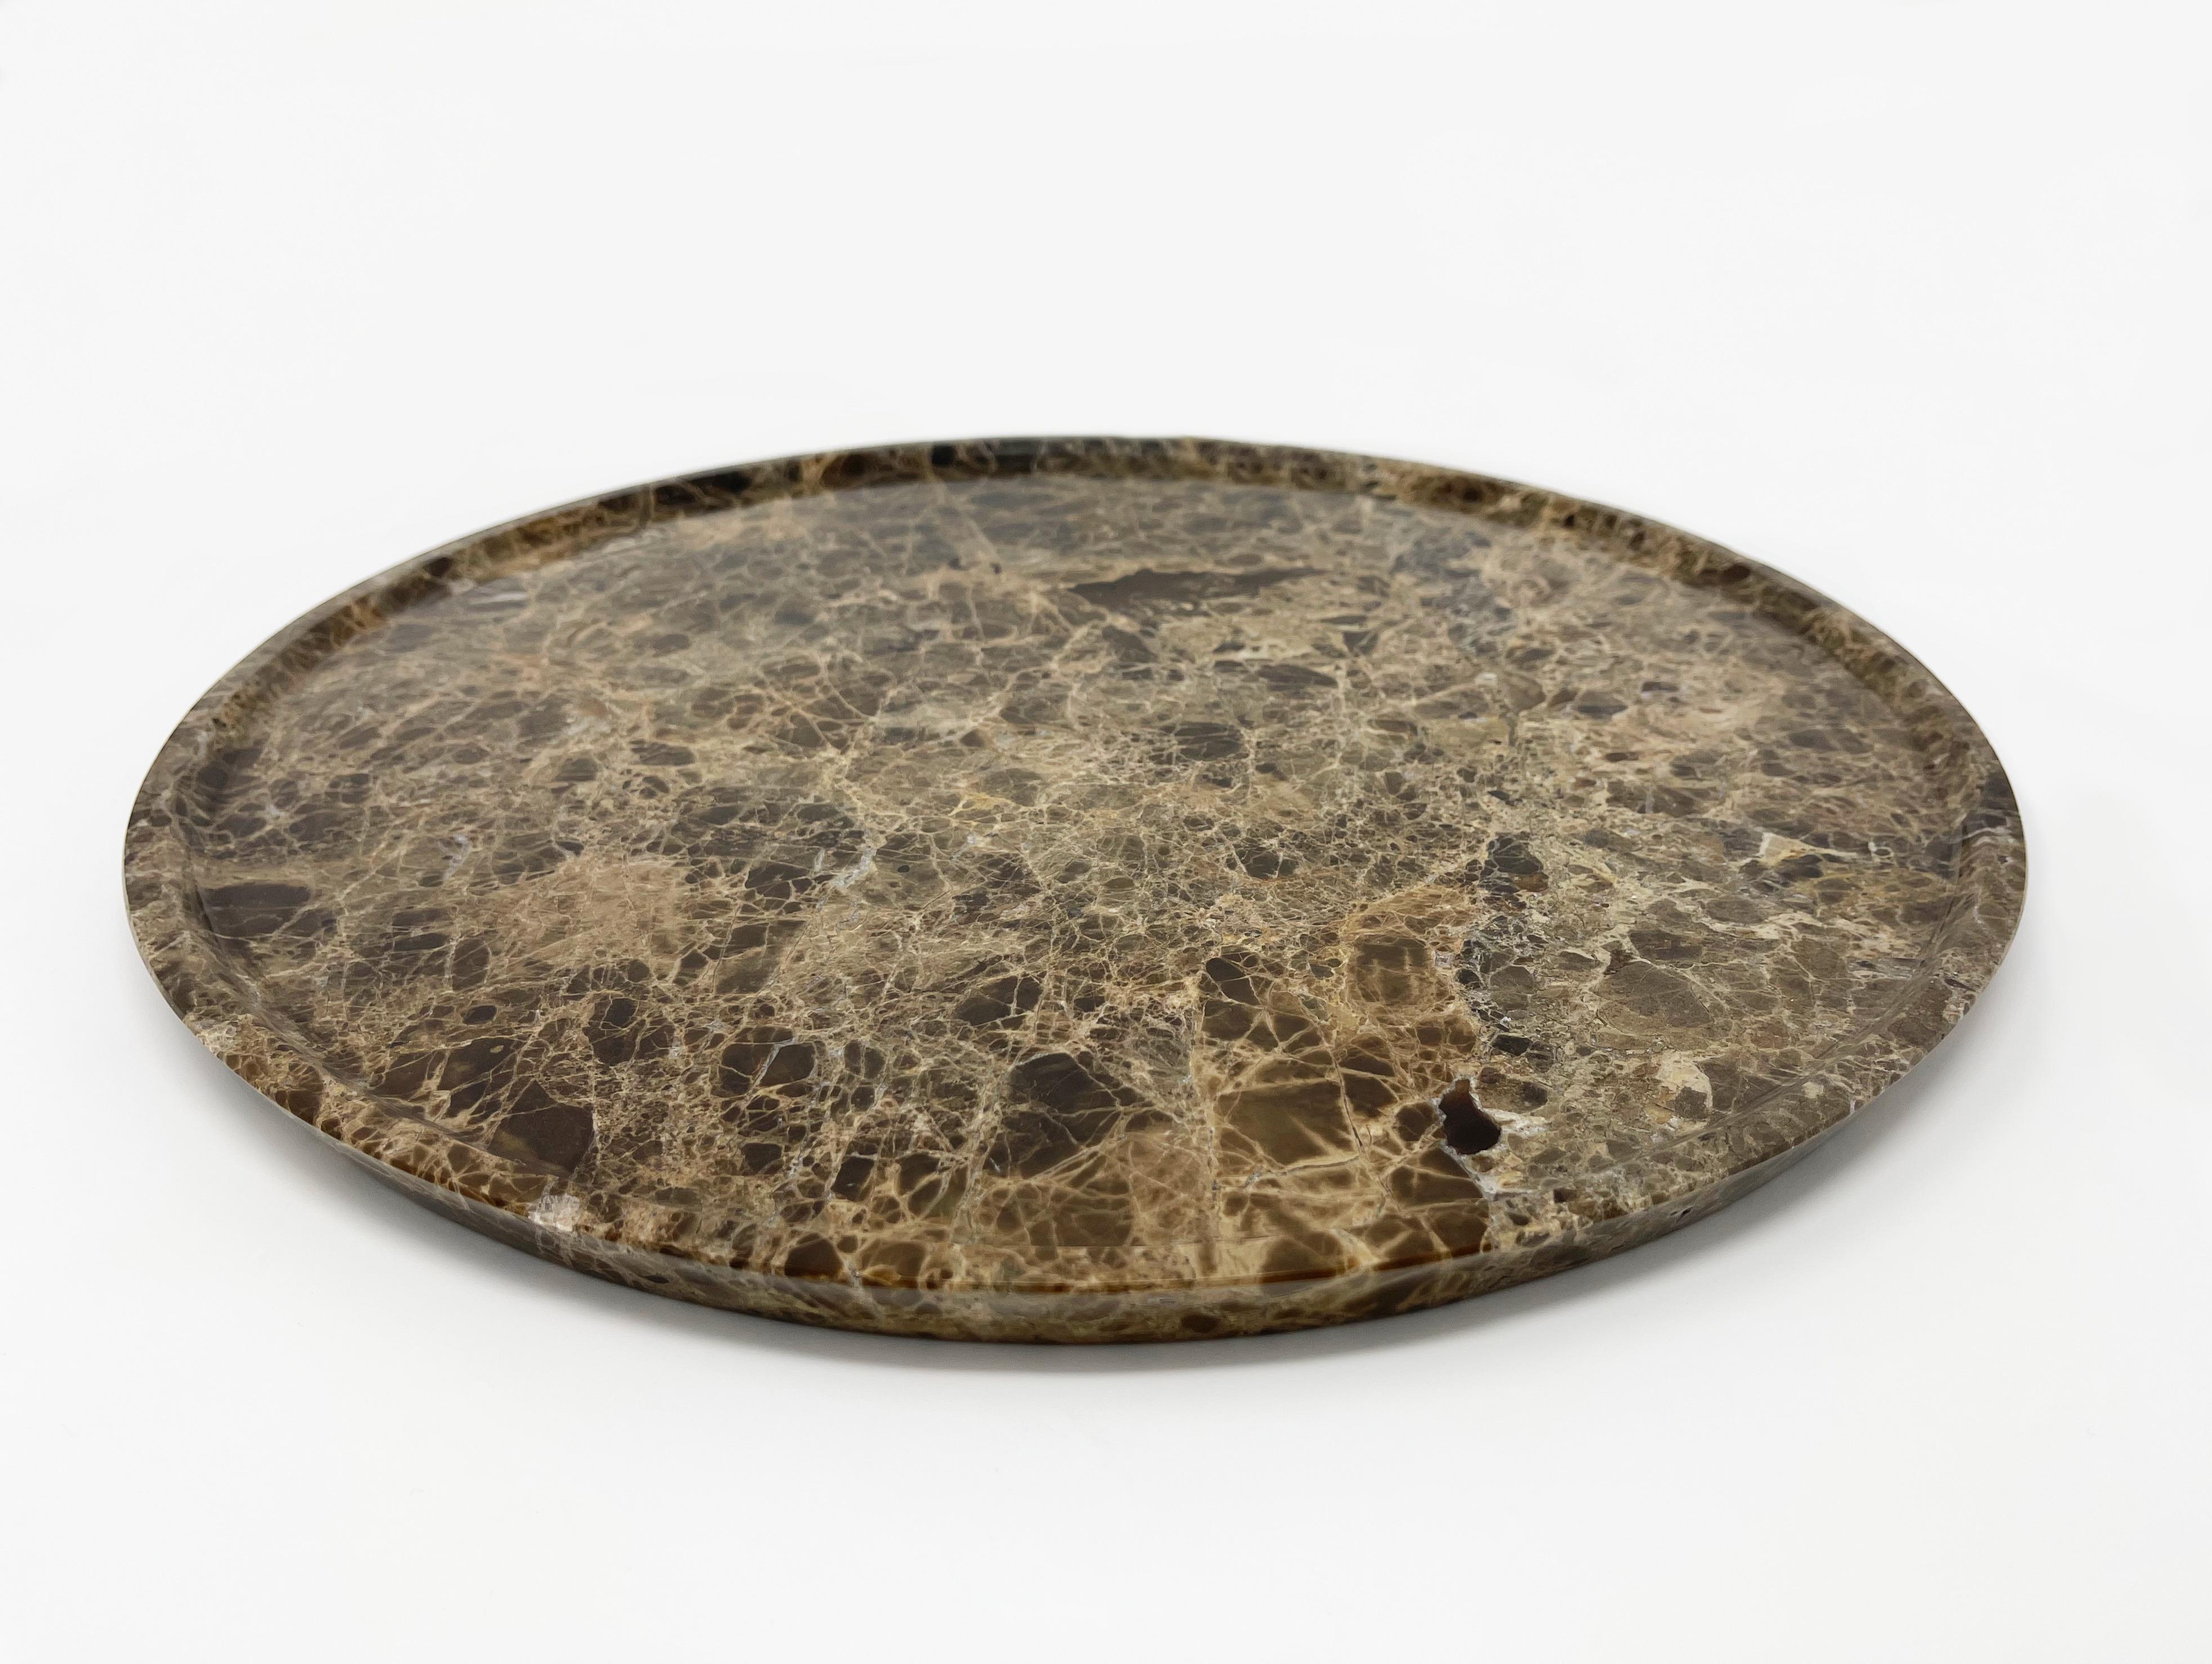 Das Terra-Tablett aus dunklem Emperador-Marmor kann als fantastischer Tafelaufsatz für eine Vase oder als Ablagefläche für Gegenstände verwendet werden, die oft in den verschiedenen Räumen unseres Hauses verstreut sind. 

Außerdem können Sie damit